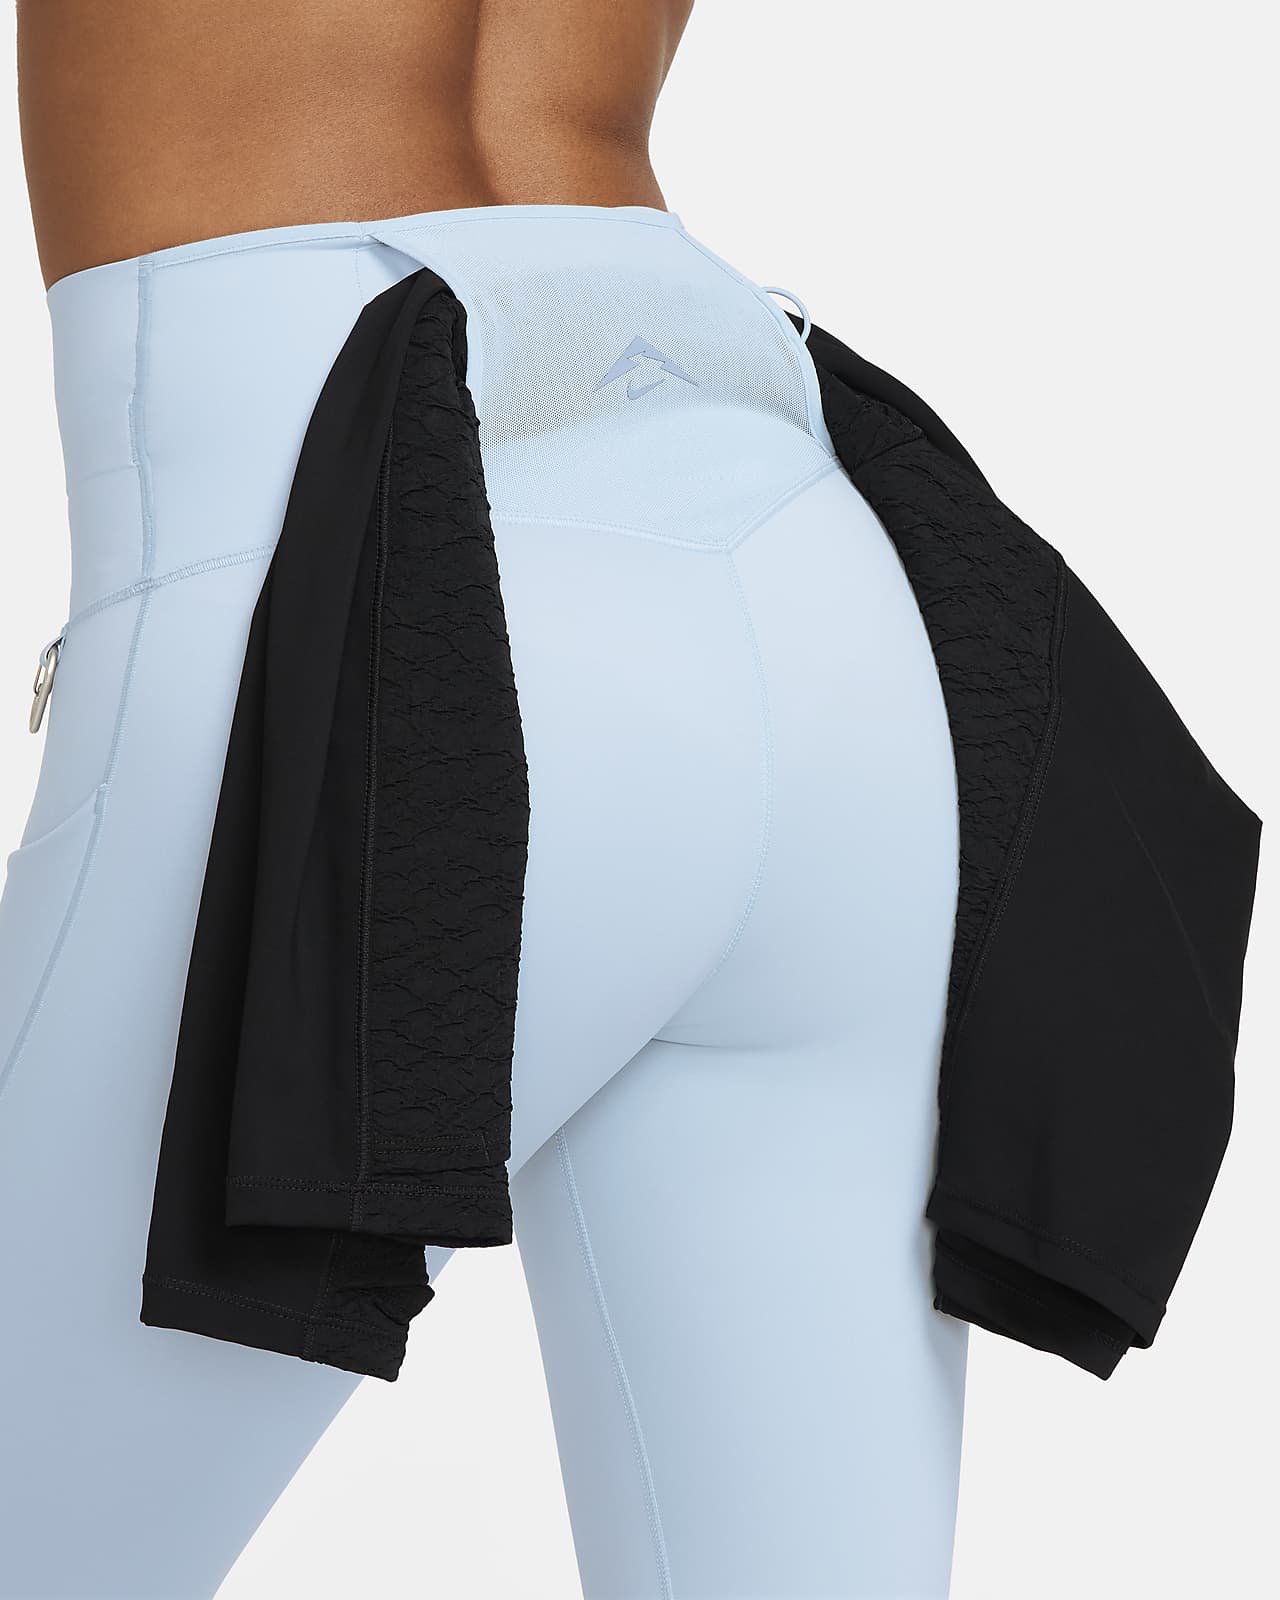 Leggings de tiro alto de 7/8 de sujeción firme con bolsillos para mujer Nike  Go. Nike MX